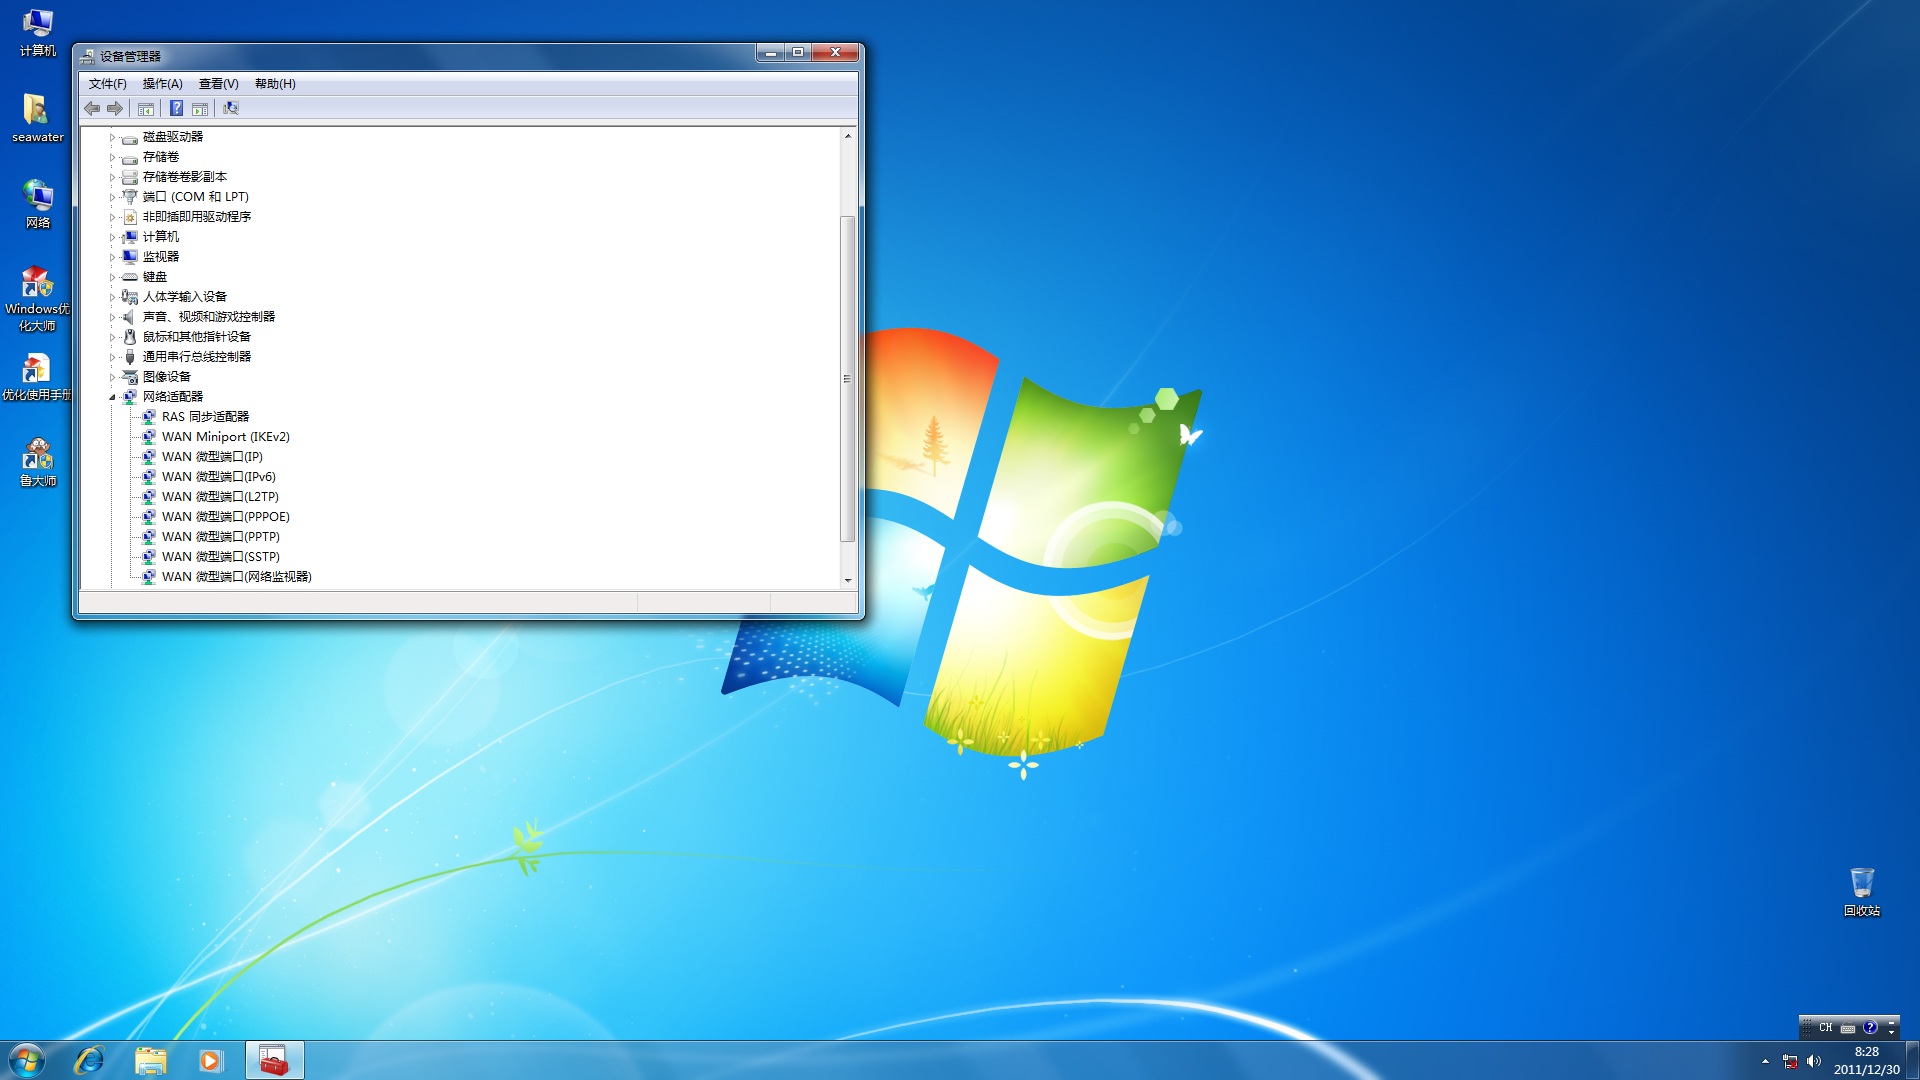 安装windows 7操作系统之后找不到网络适配器_Win7系统驱动使用问题_ 